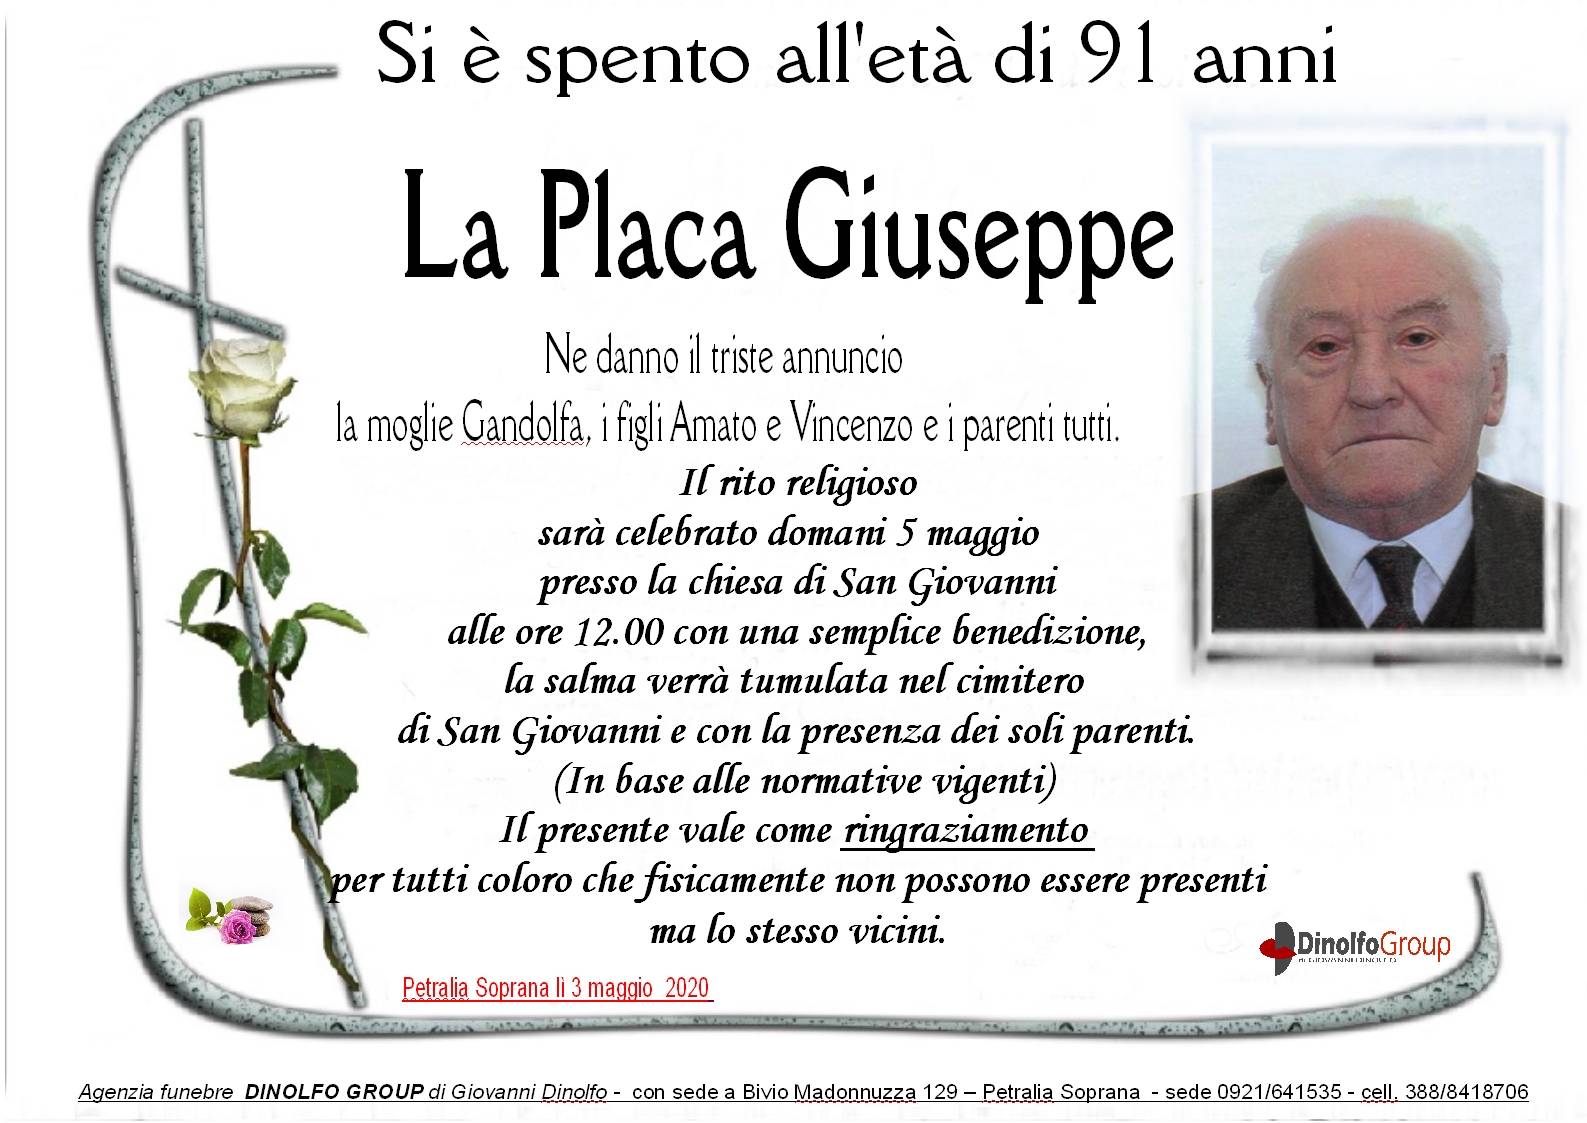 Giuseppe La Placa